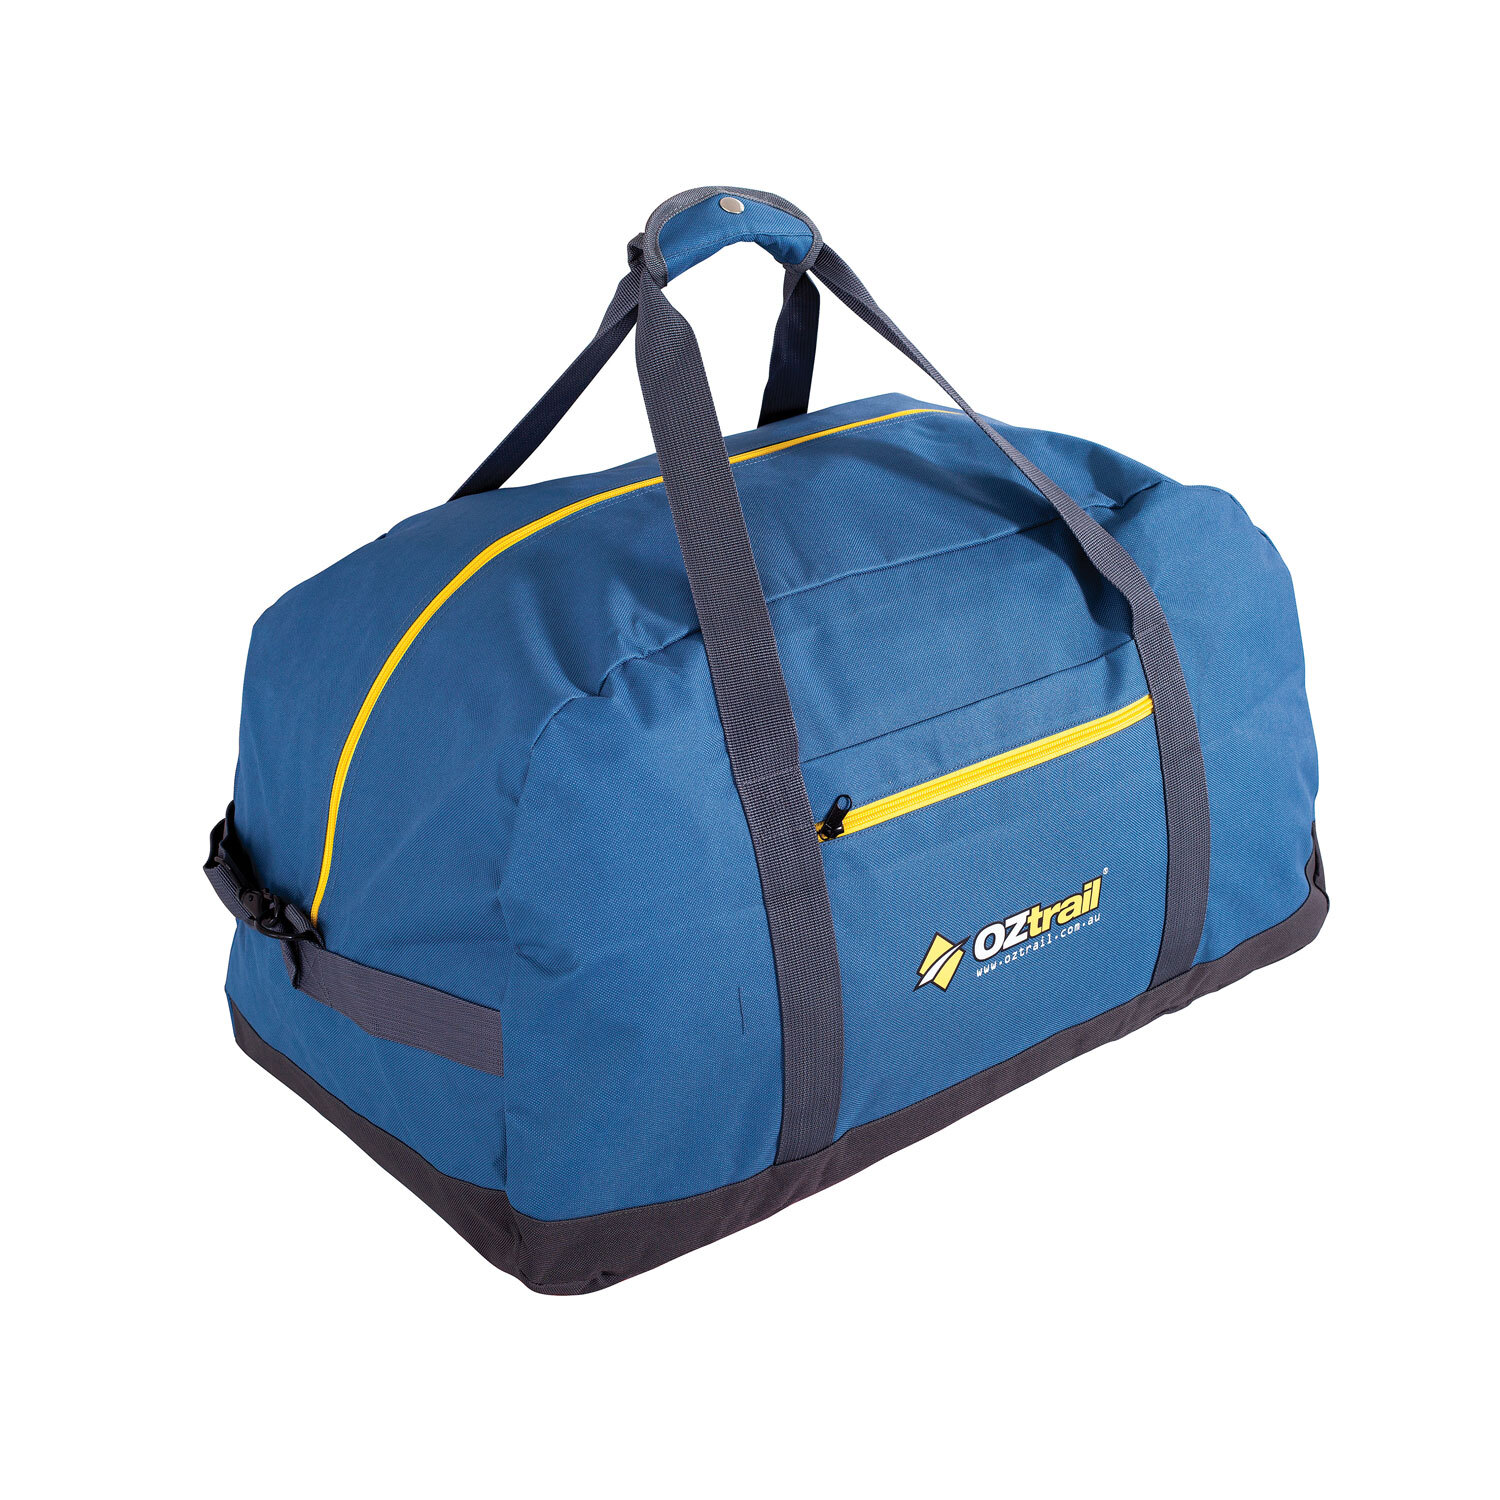 Duffel Bag Oztrail Travel Duffle Bag Large 70L